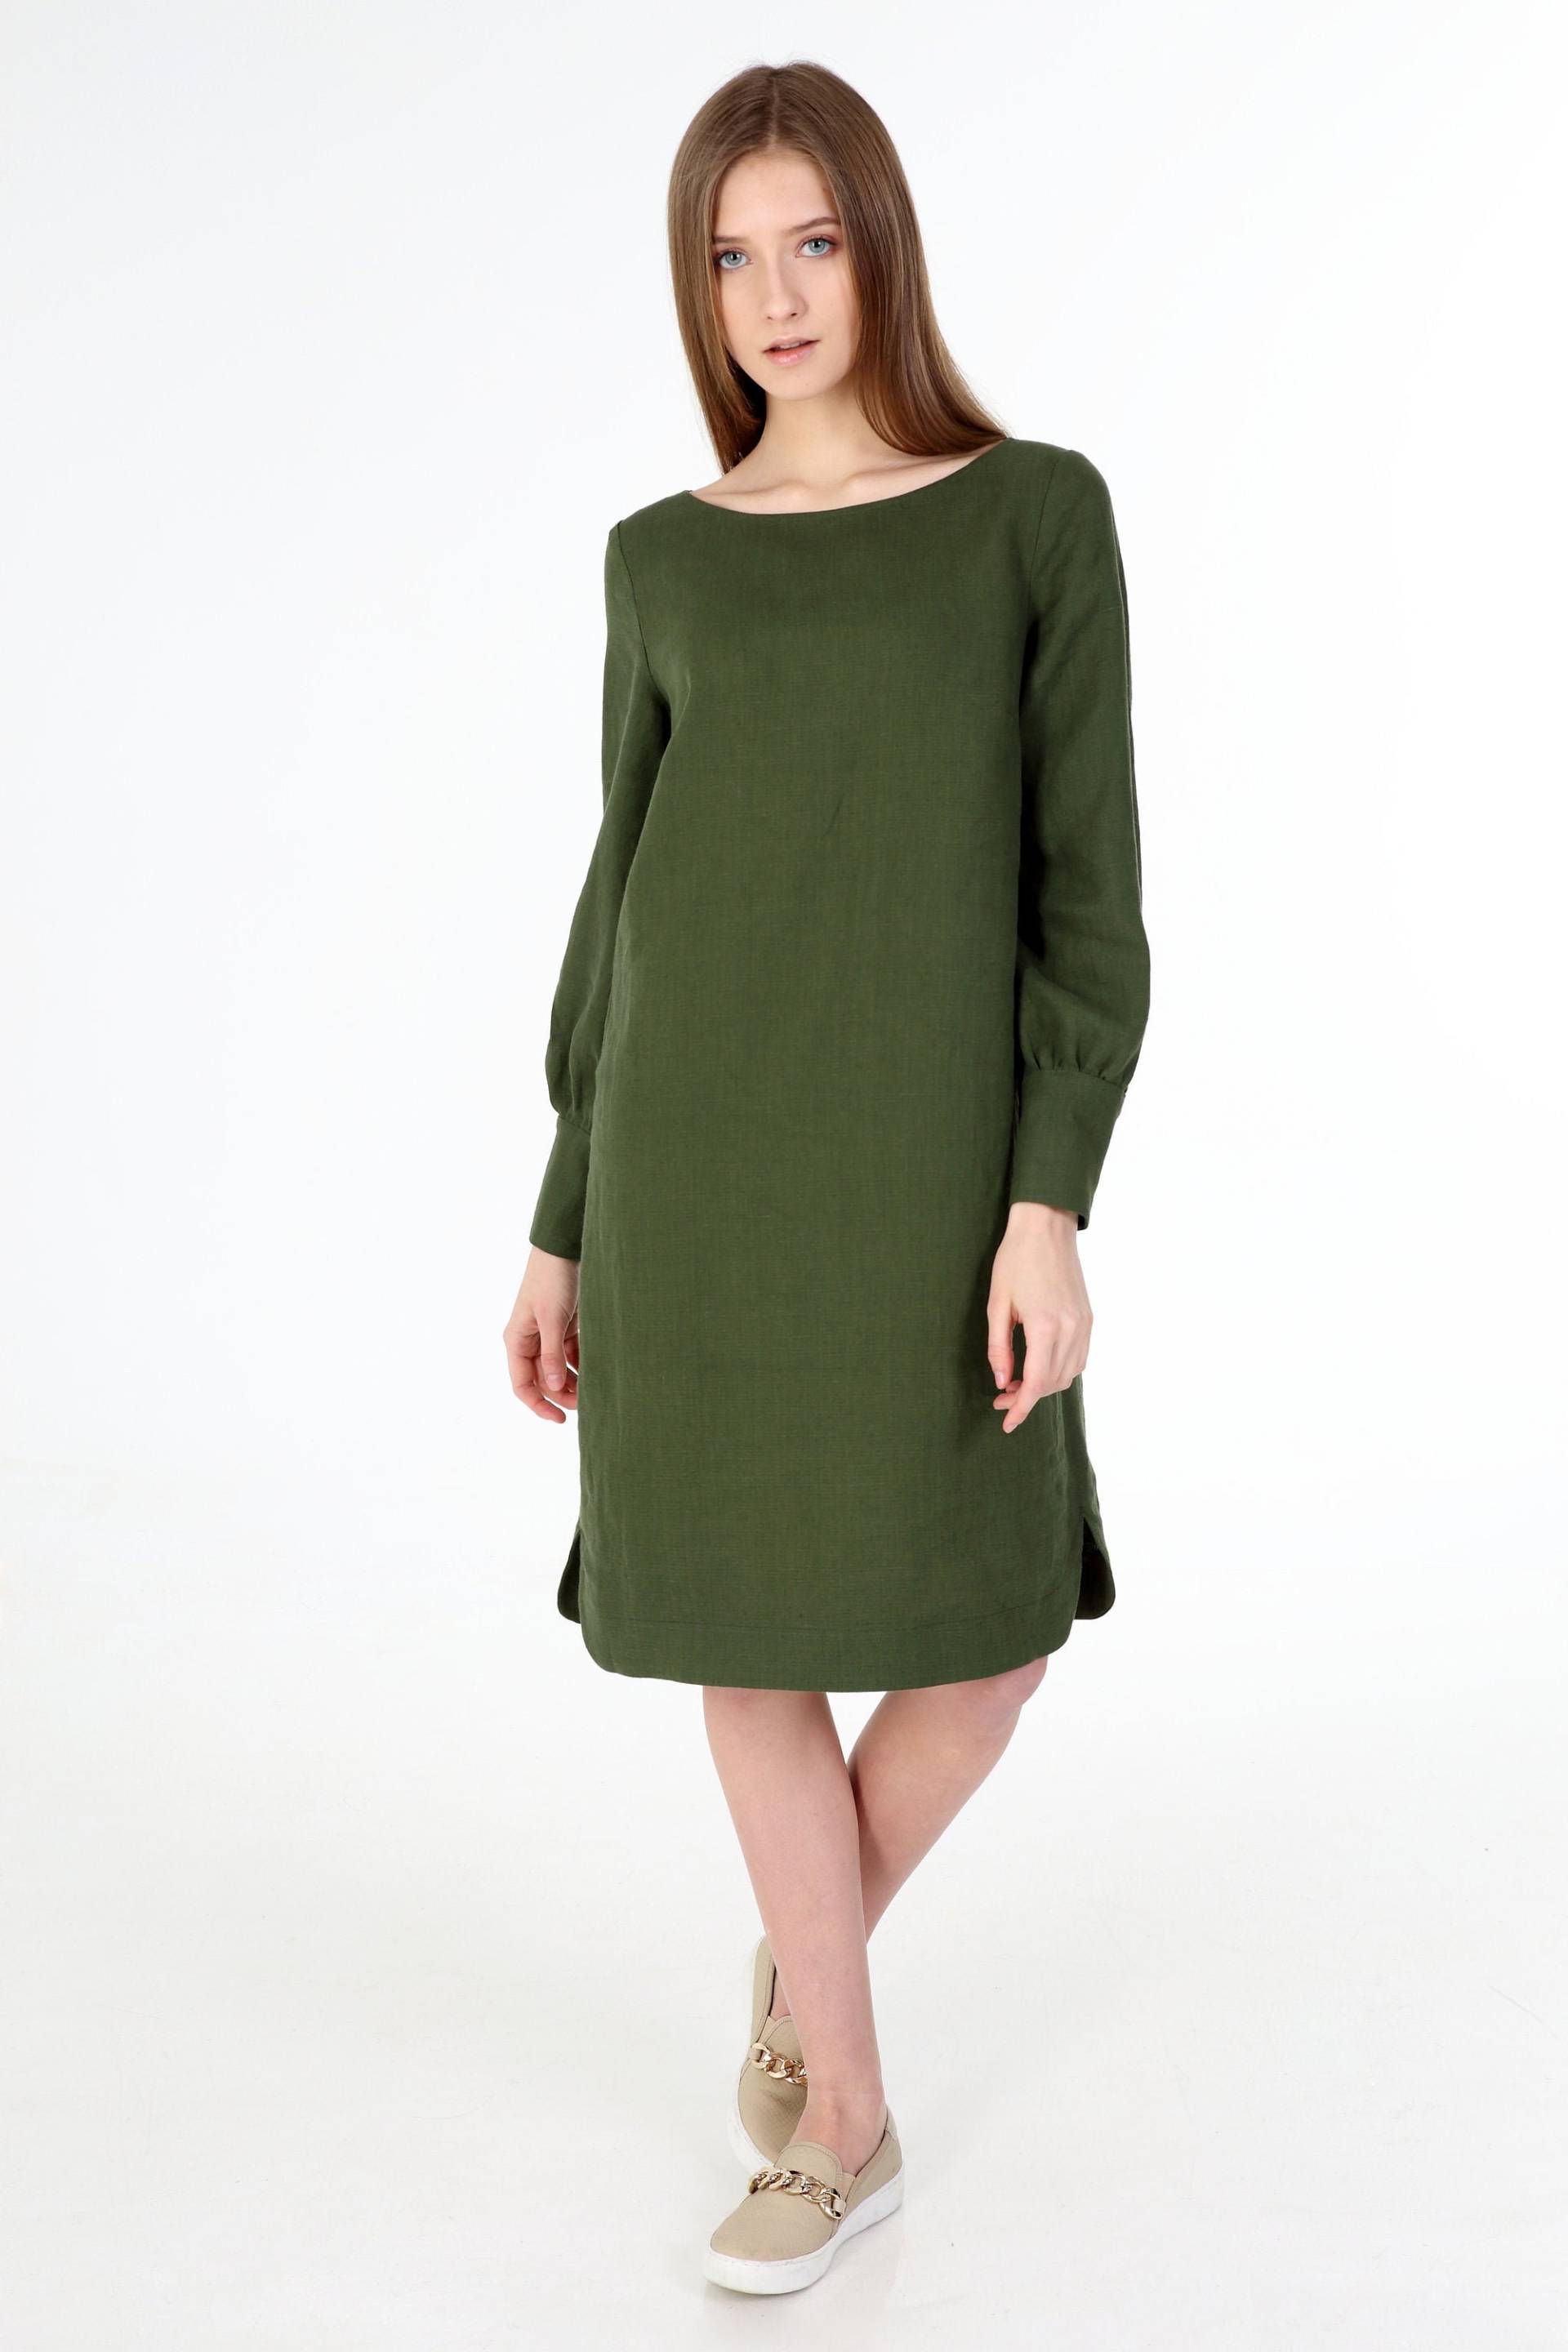 Leinenkleid, Leinenhemd Kleid, Leinen Tunika, Sommerkleid, Grünes Schwarzes Minimalistisch von WEARandSMILE